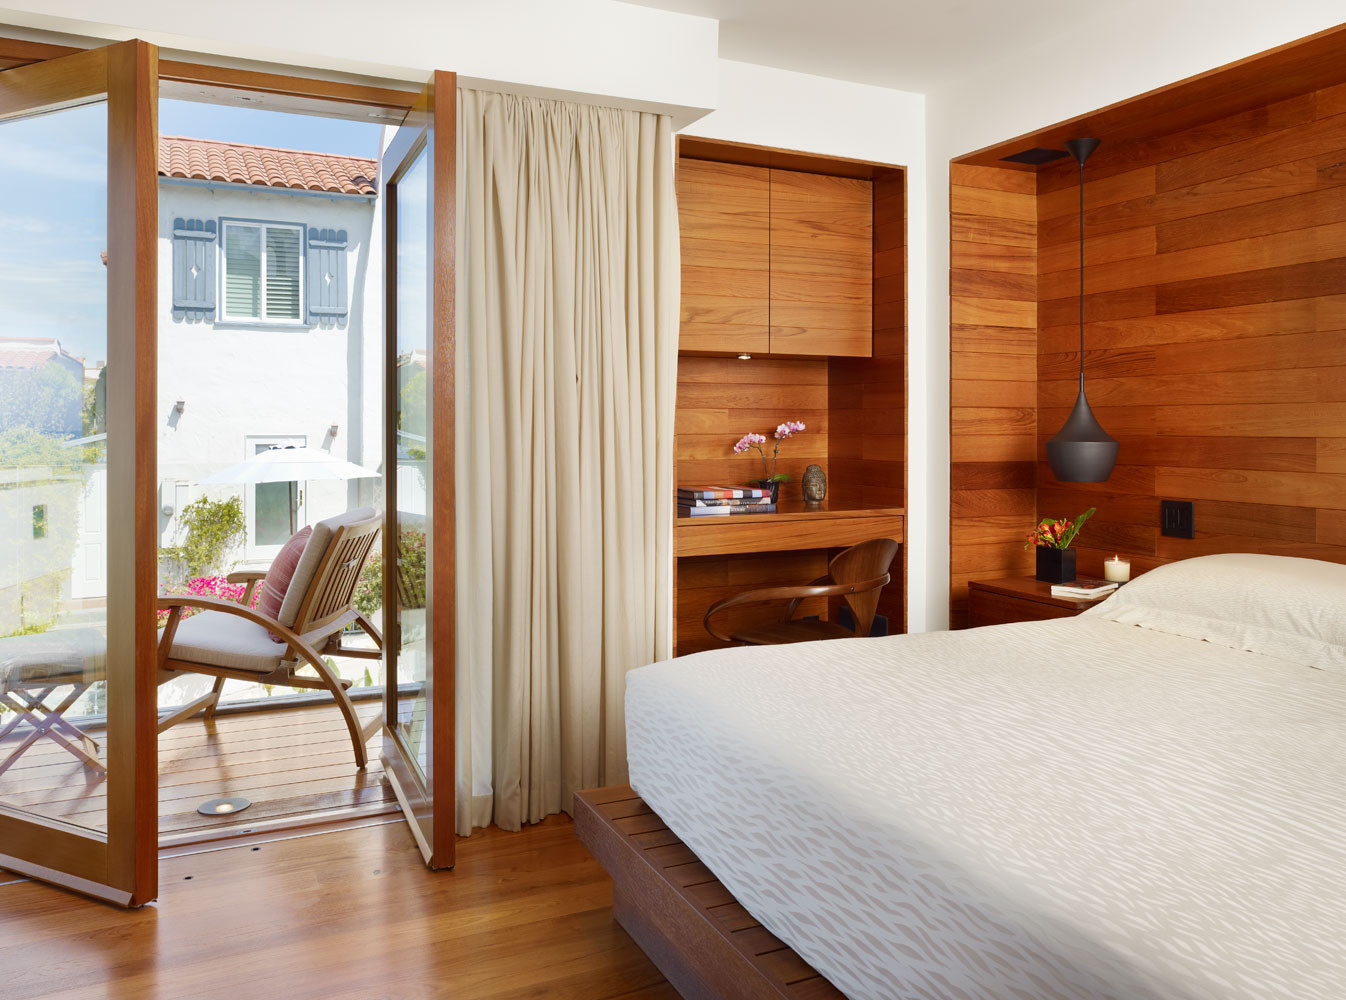 Small Bedroom Design Ideas
 10 Tips on Small Bedroom Interior Design Homesthetics